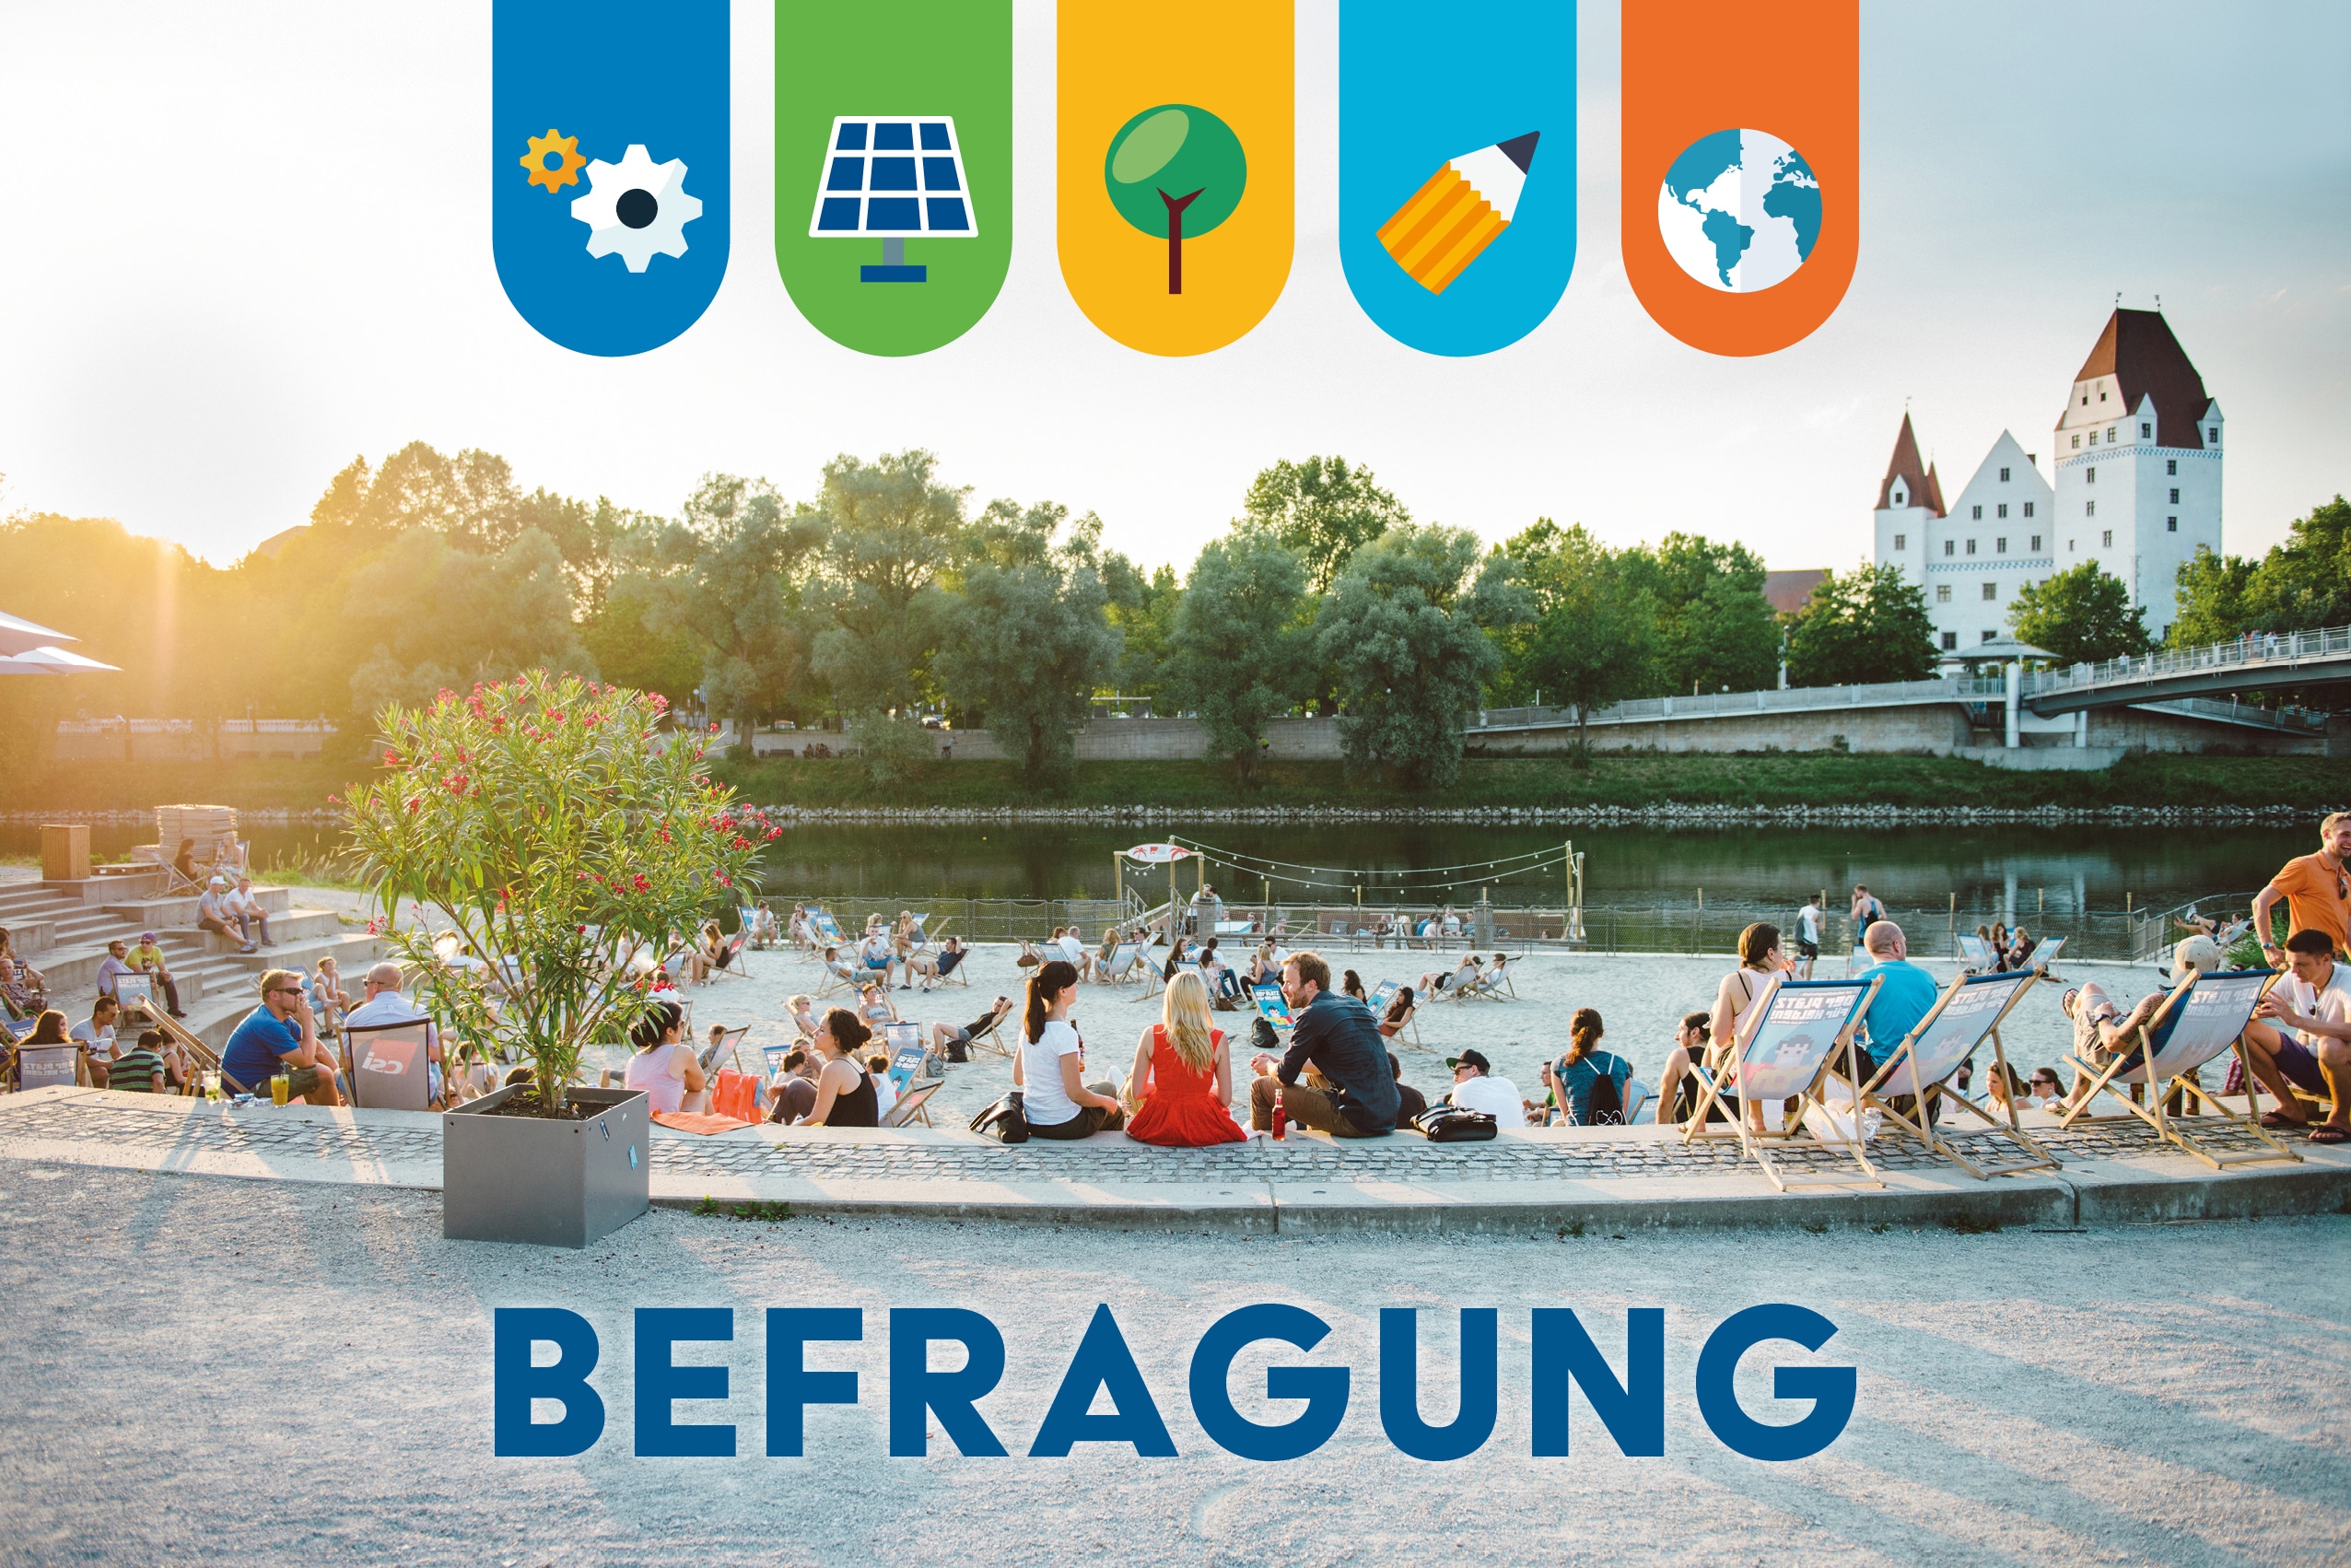 2. Befragung zur Nachhaltigkeit in Ingolstadt